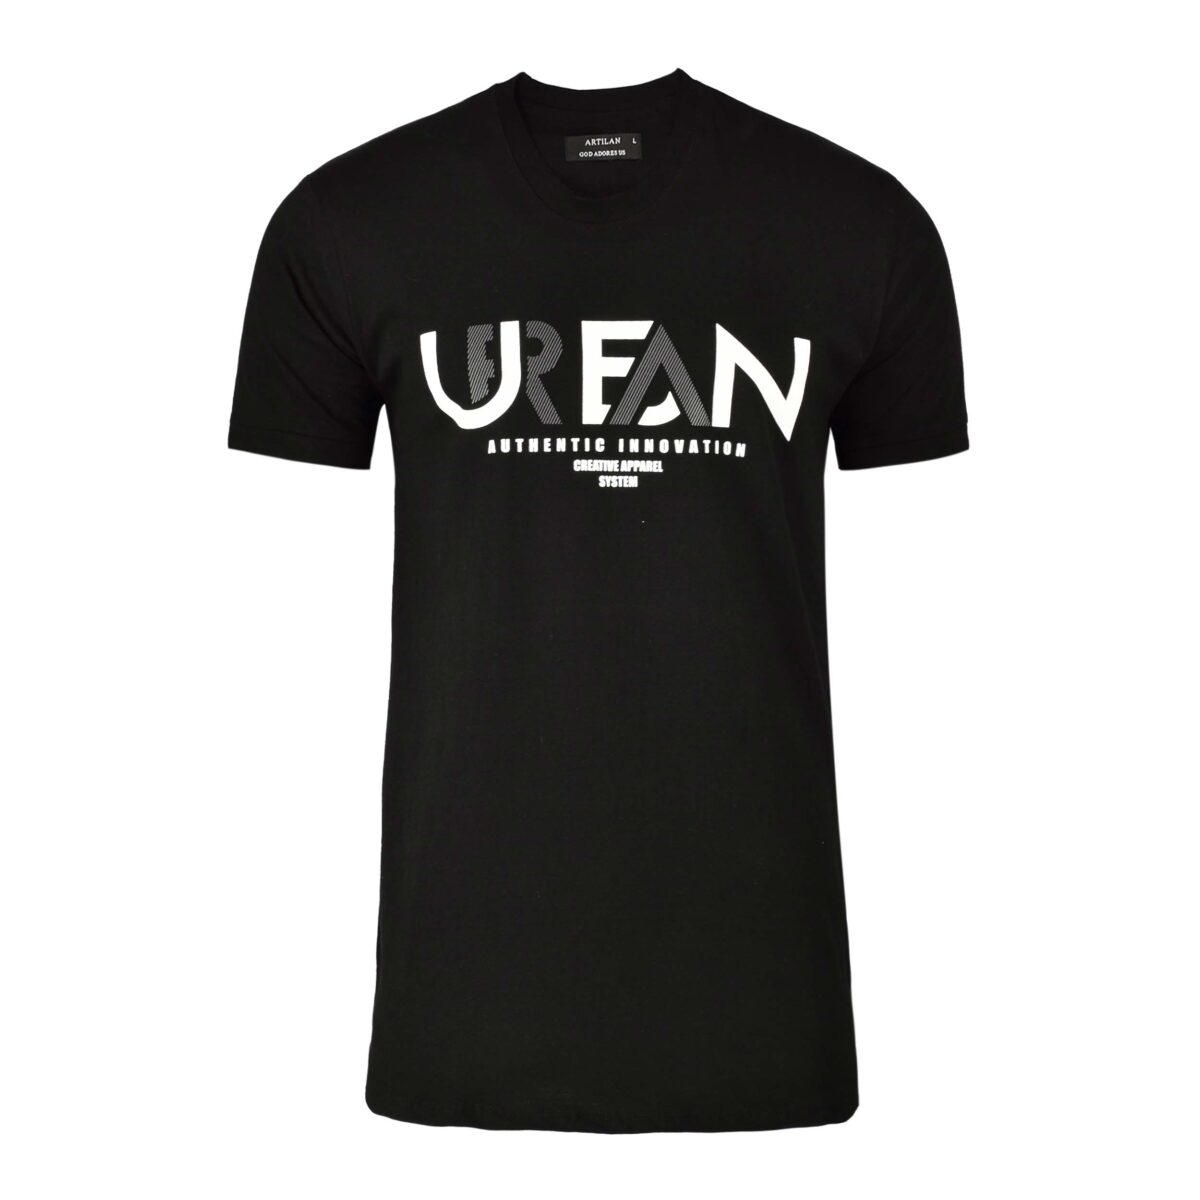 تیشرت مردانه طرح UREAN کد019 فروشگاه اینترنتی ریبون - تیشرت مشکی چاپی